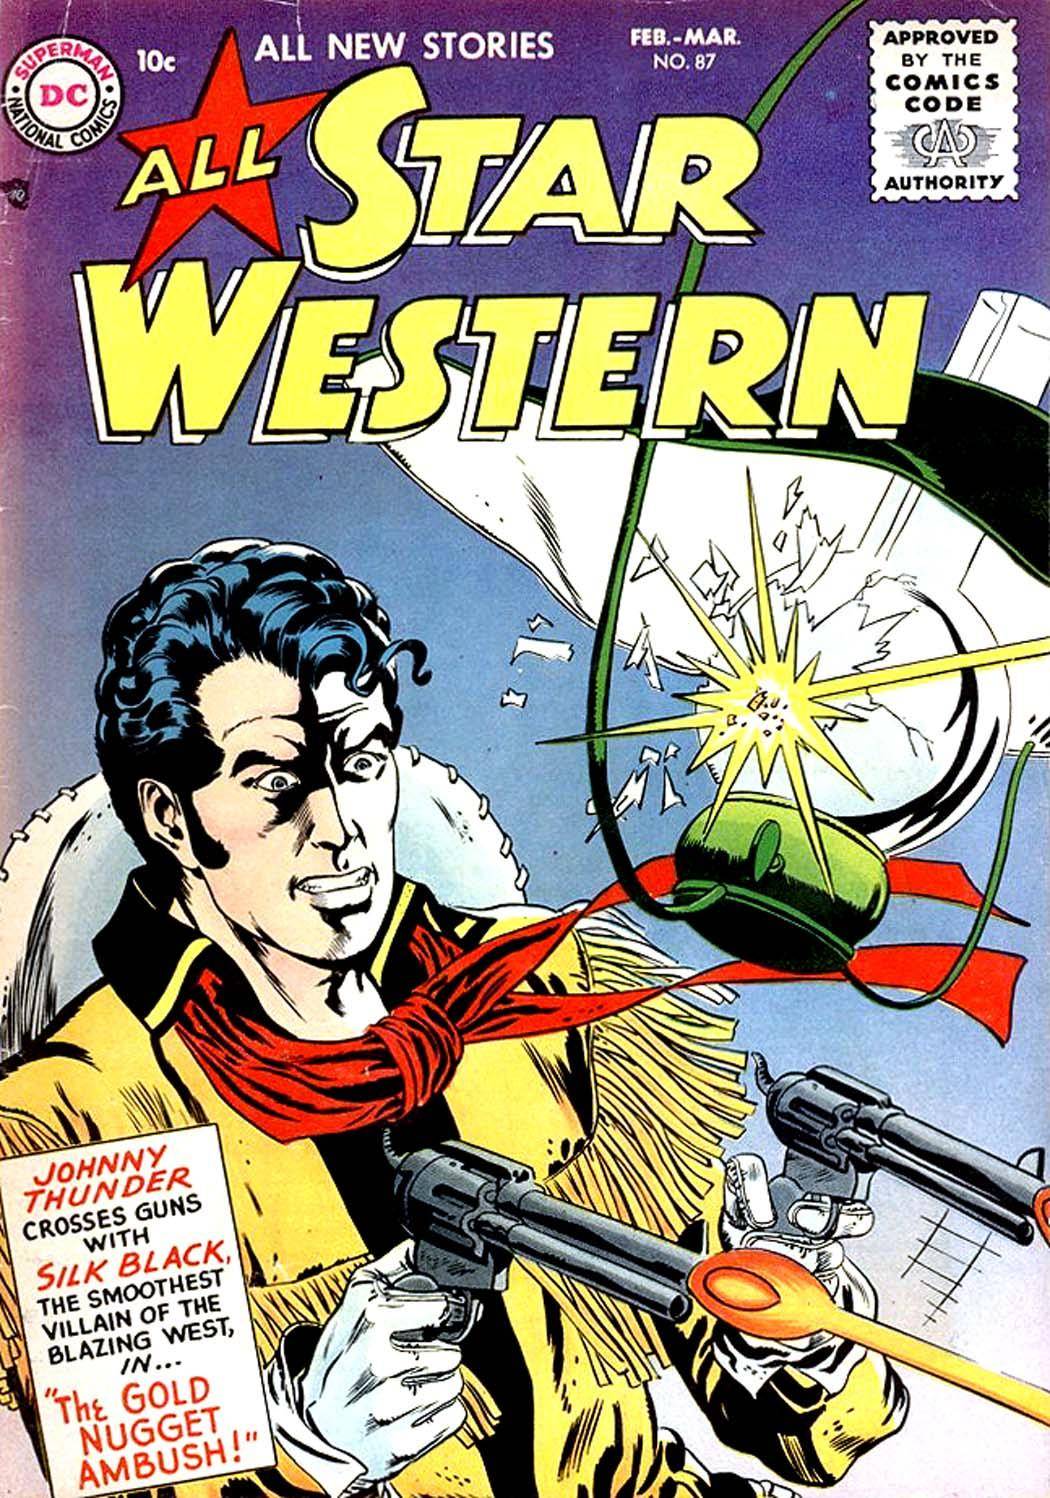 Star Western v1 087 1956